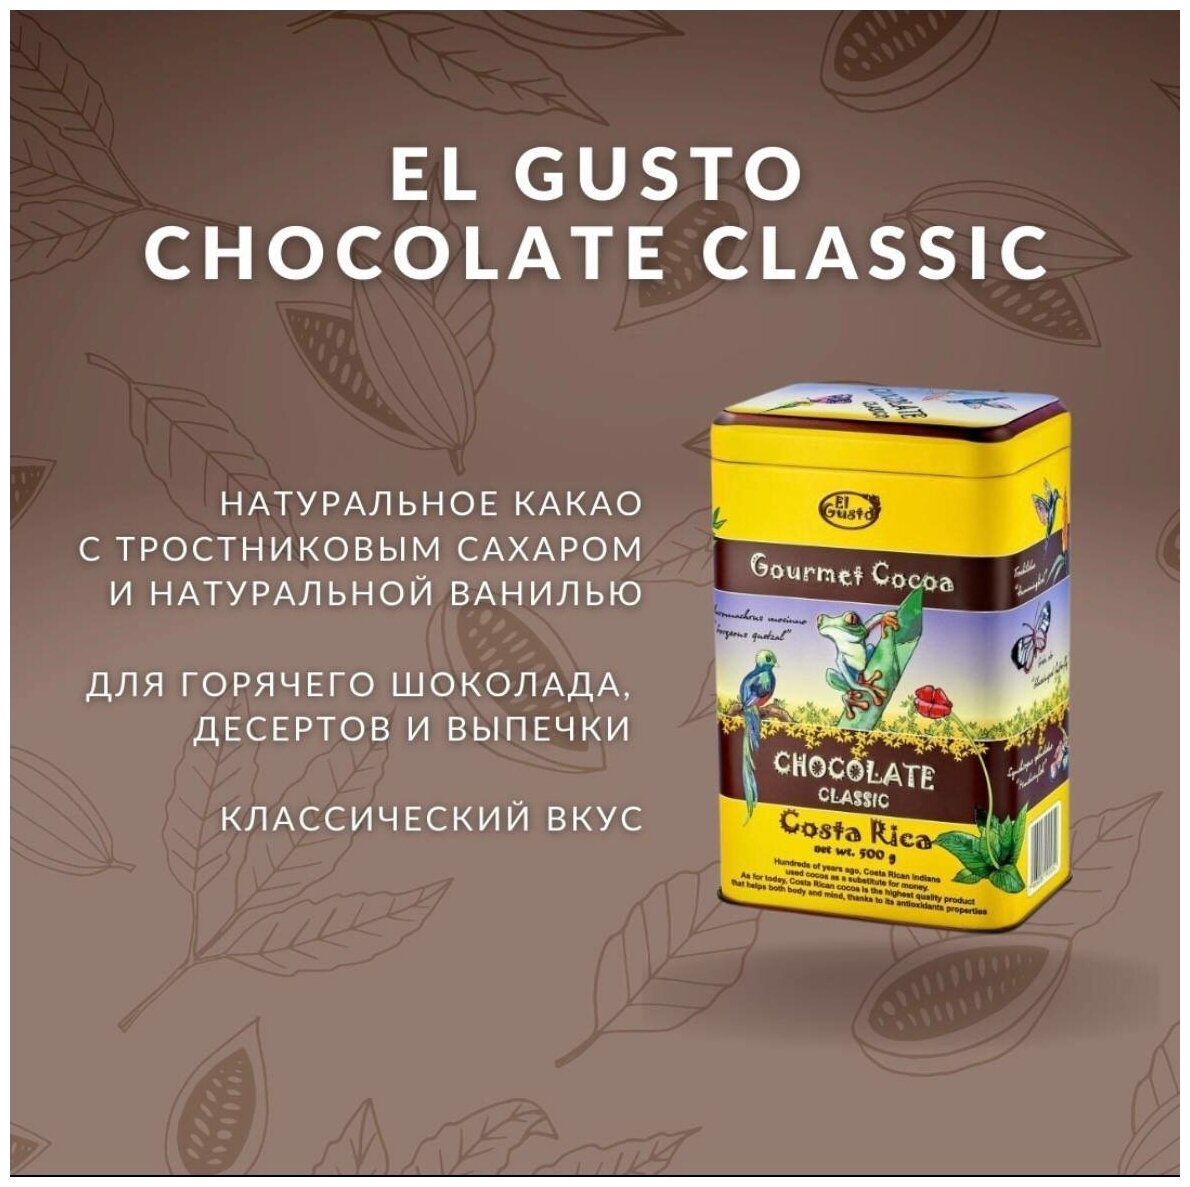 Настоящий горячий шоколад, Какао El Gusto hot chocolate, 500 г. растворимый. Коста-Рика